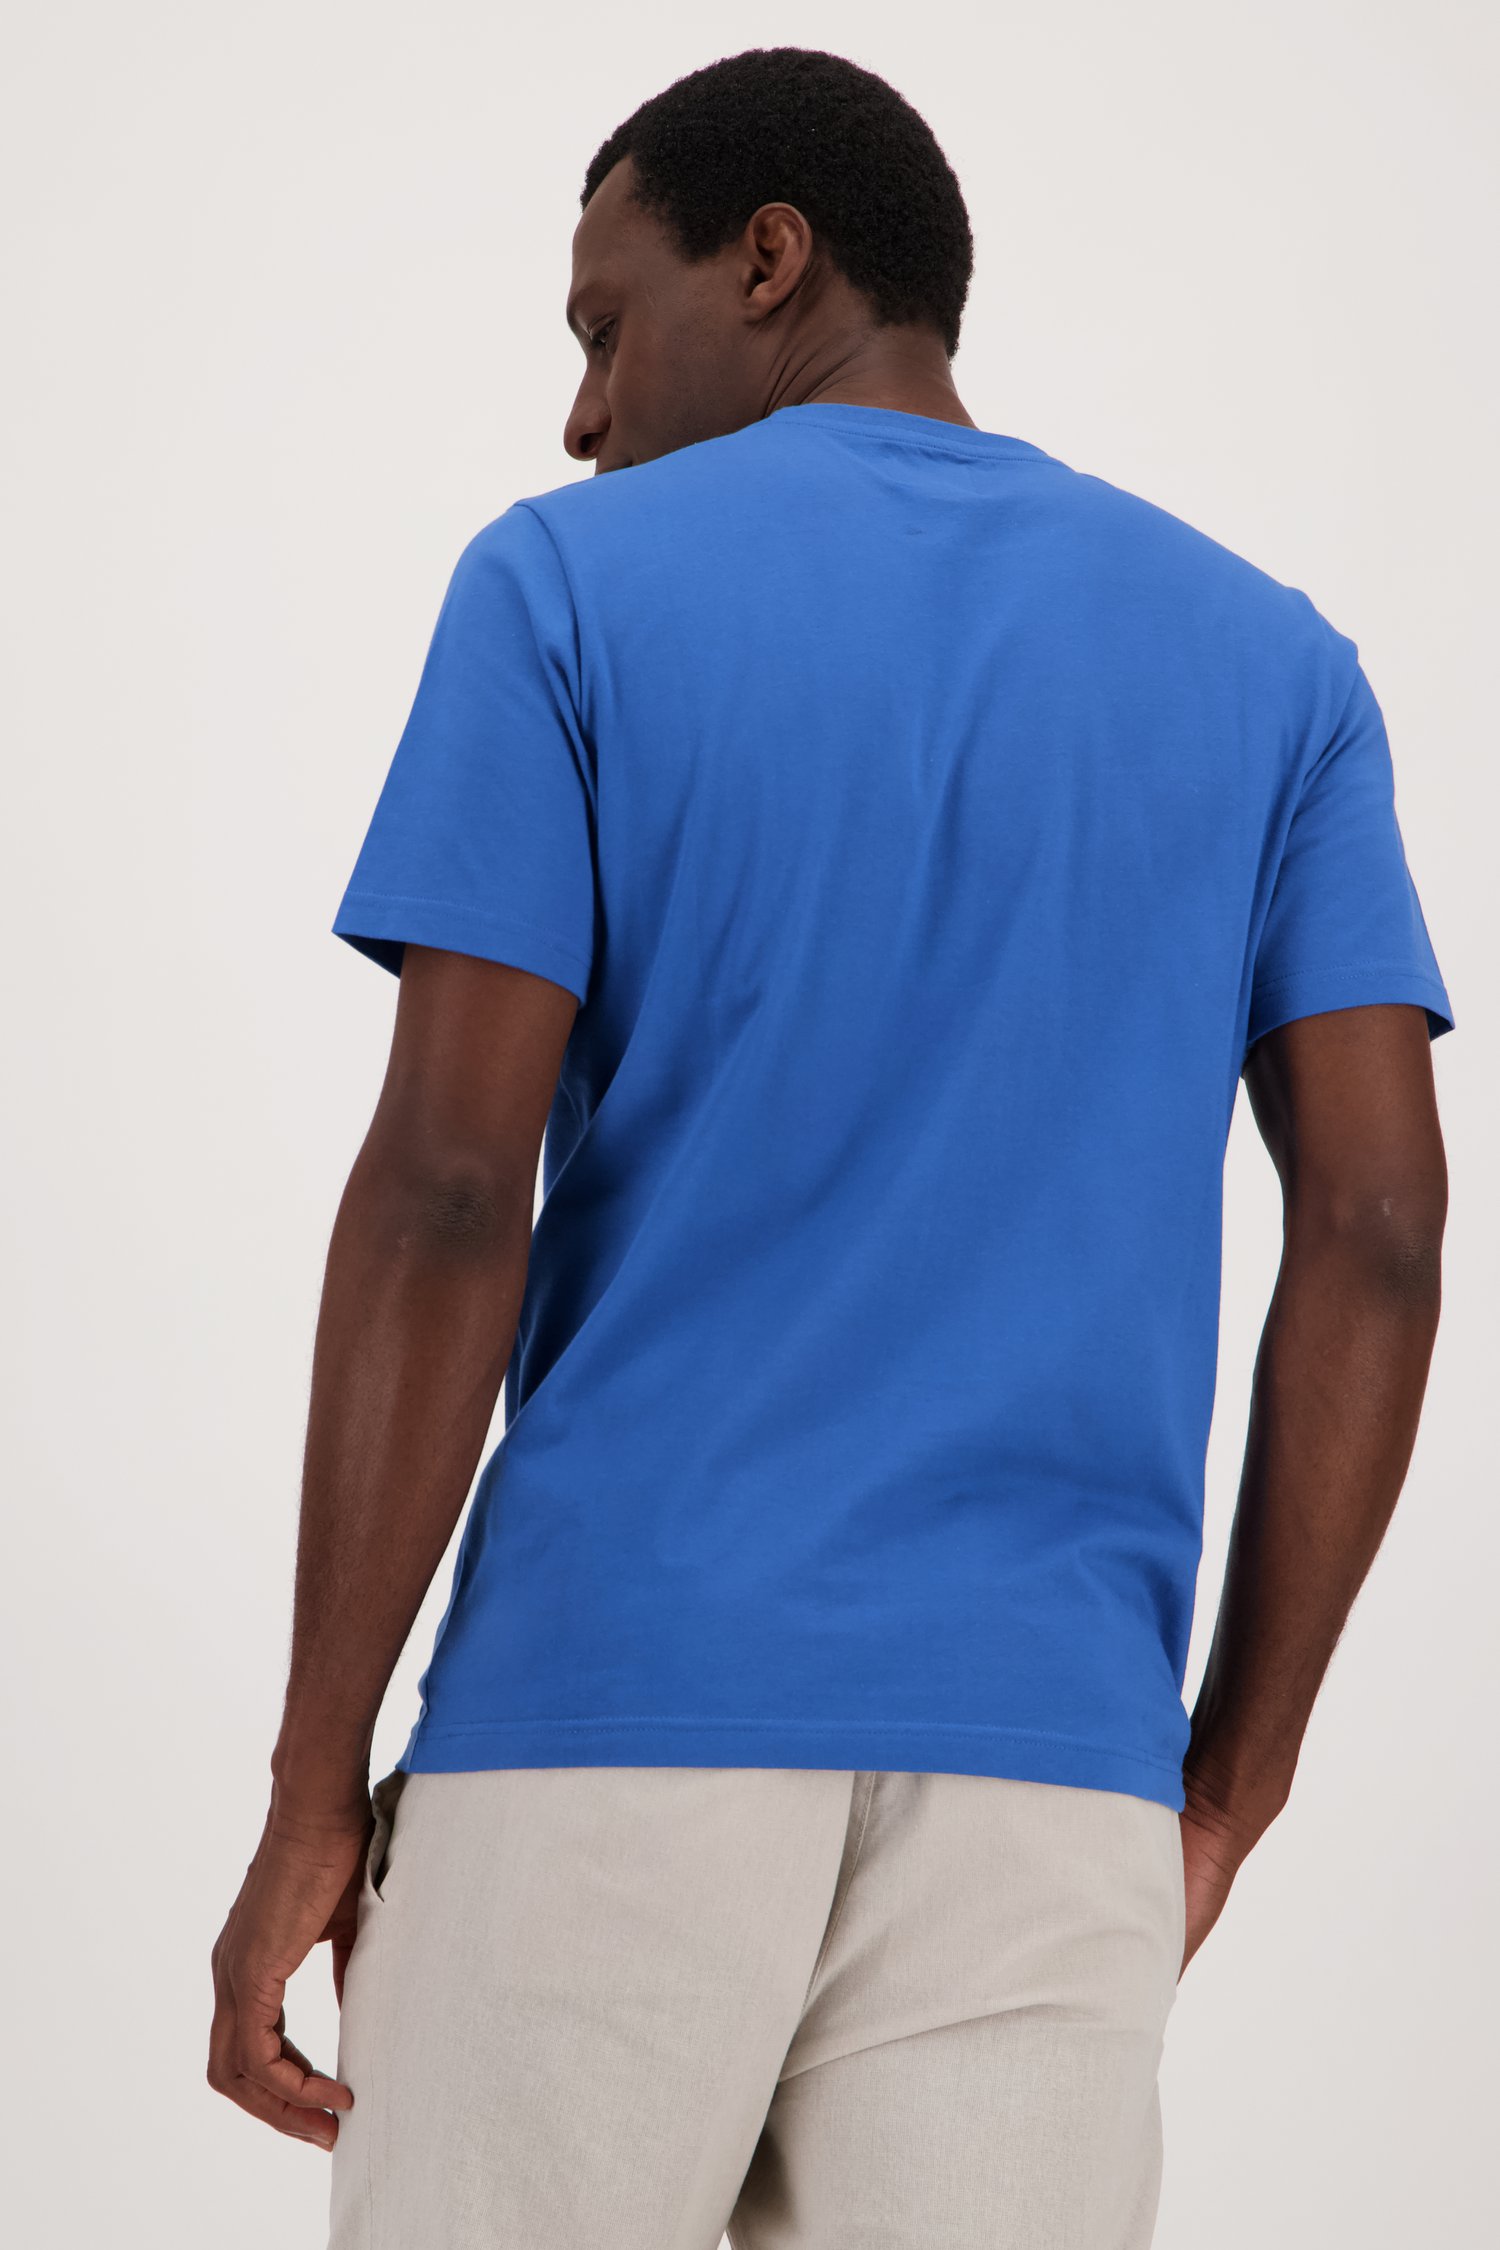 Donkerblauw T-shirt met zwarte opdruk van Casual Five voor Heren